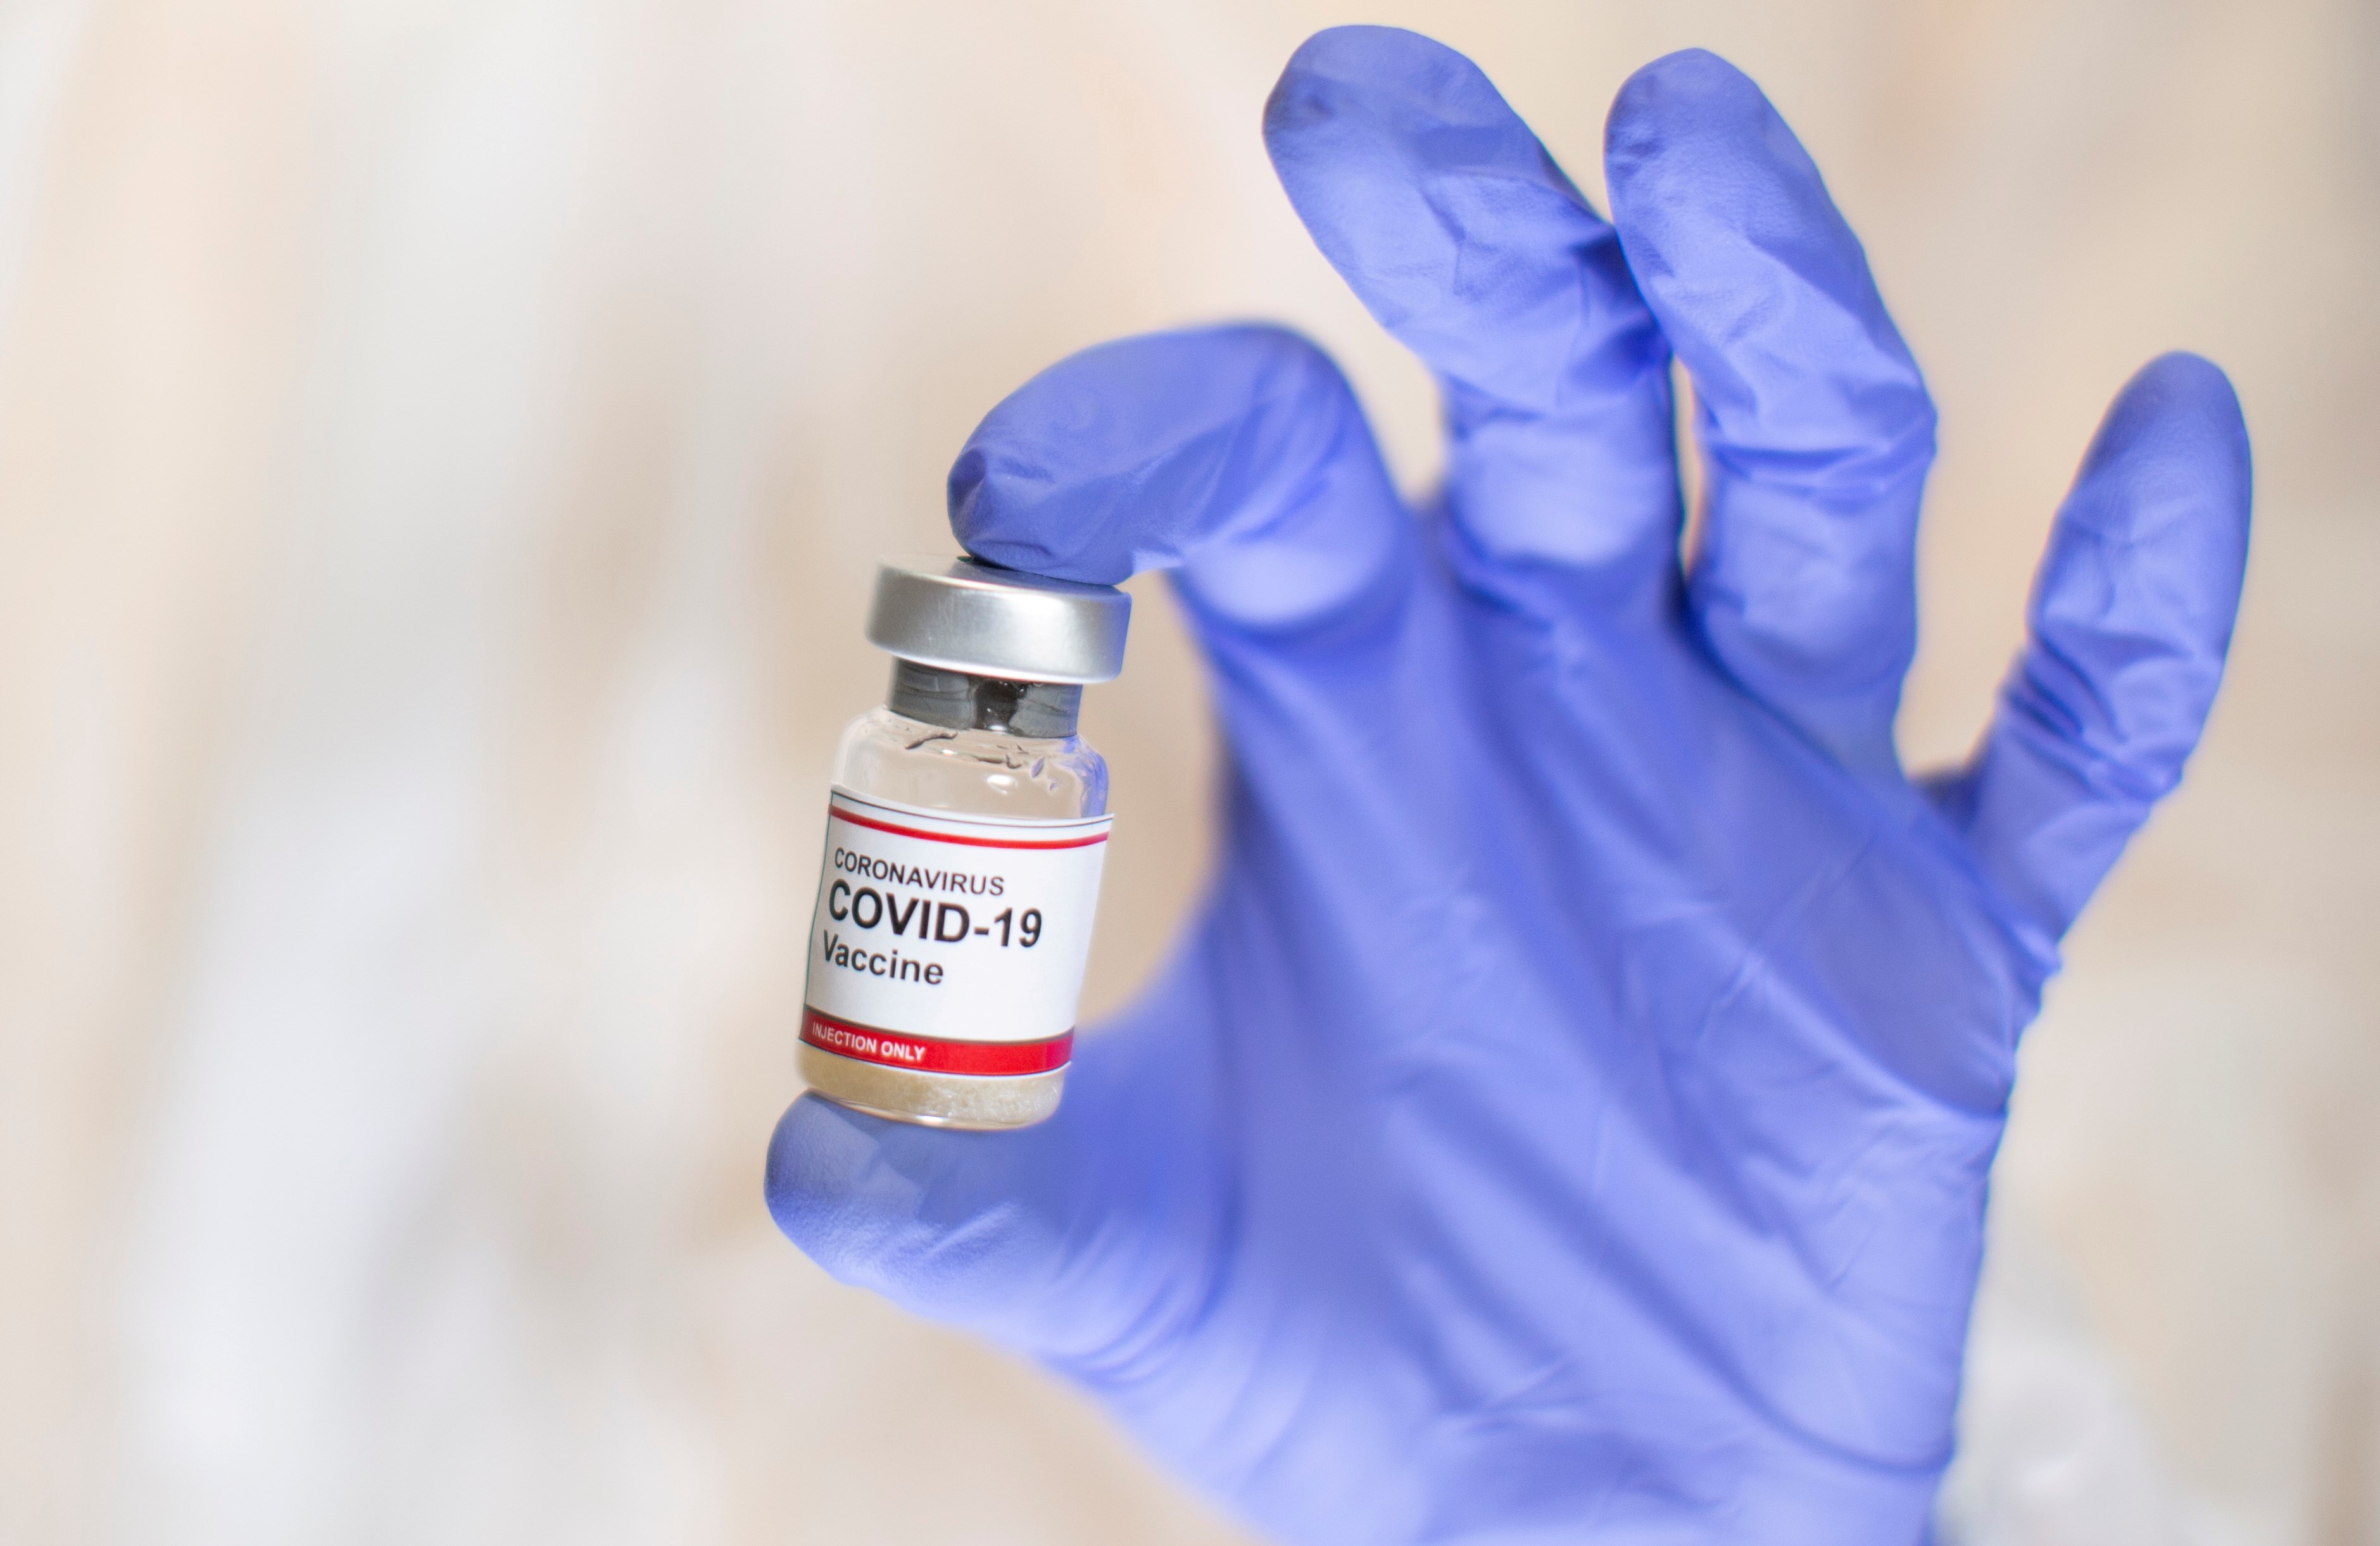 Bill Gates destekli COVID-19 aşısı, 240 milyon dolar yatırım aldı